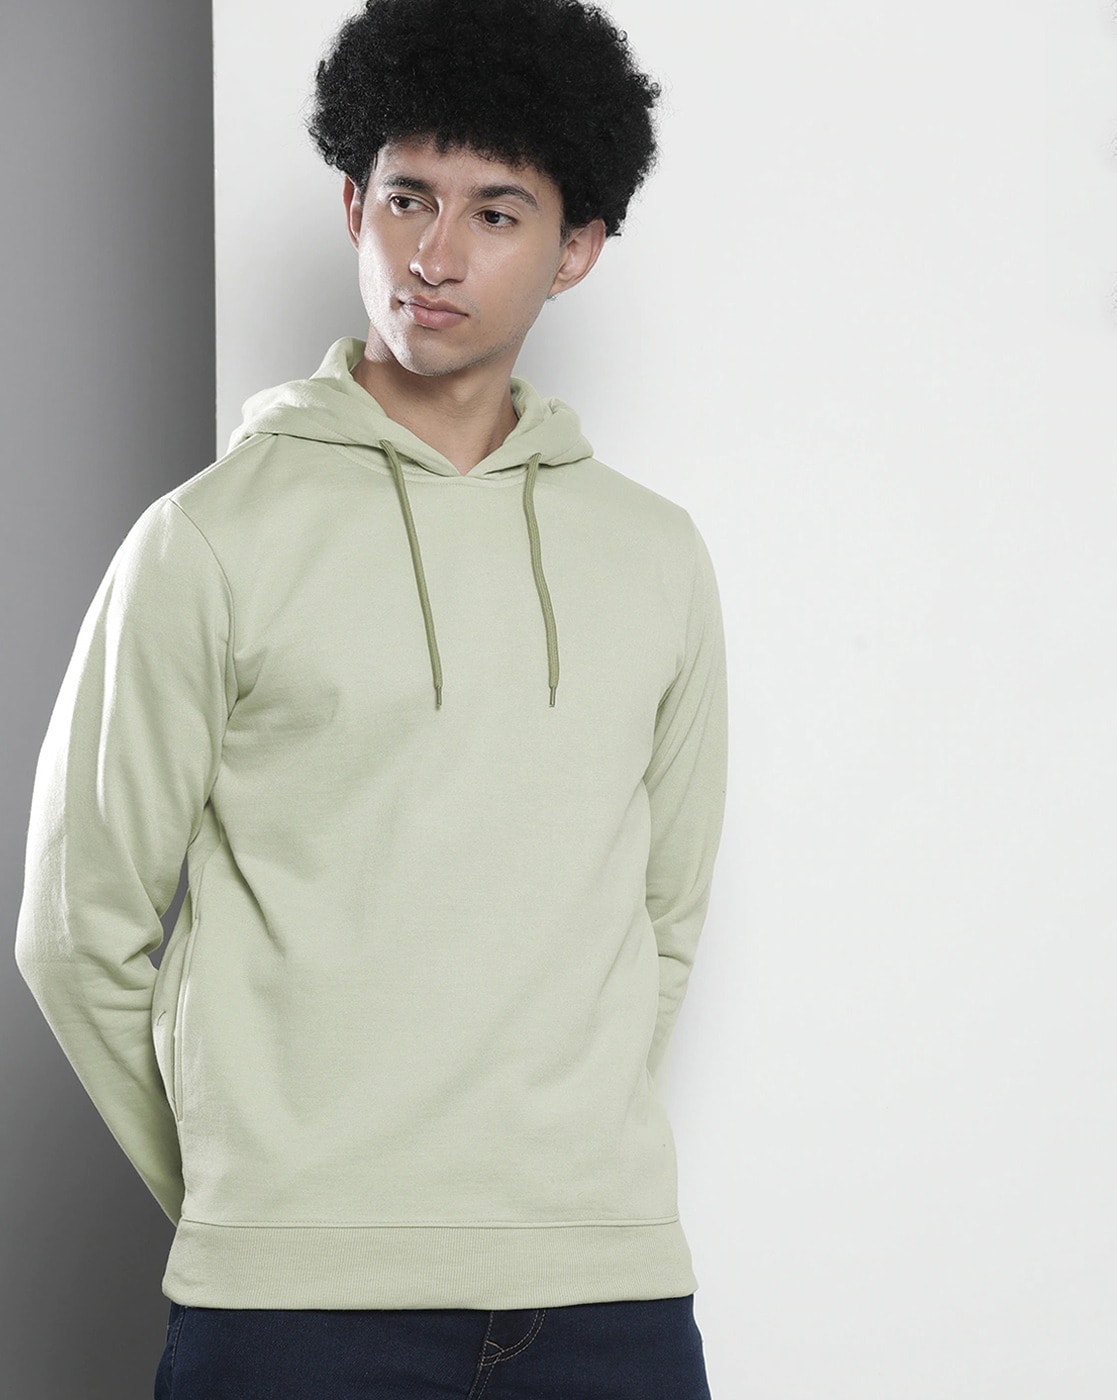 Buy Green Sweatshirt & Hoodies for Men by The Indian Garage Co Online |  